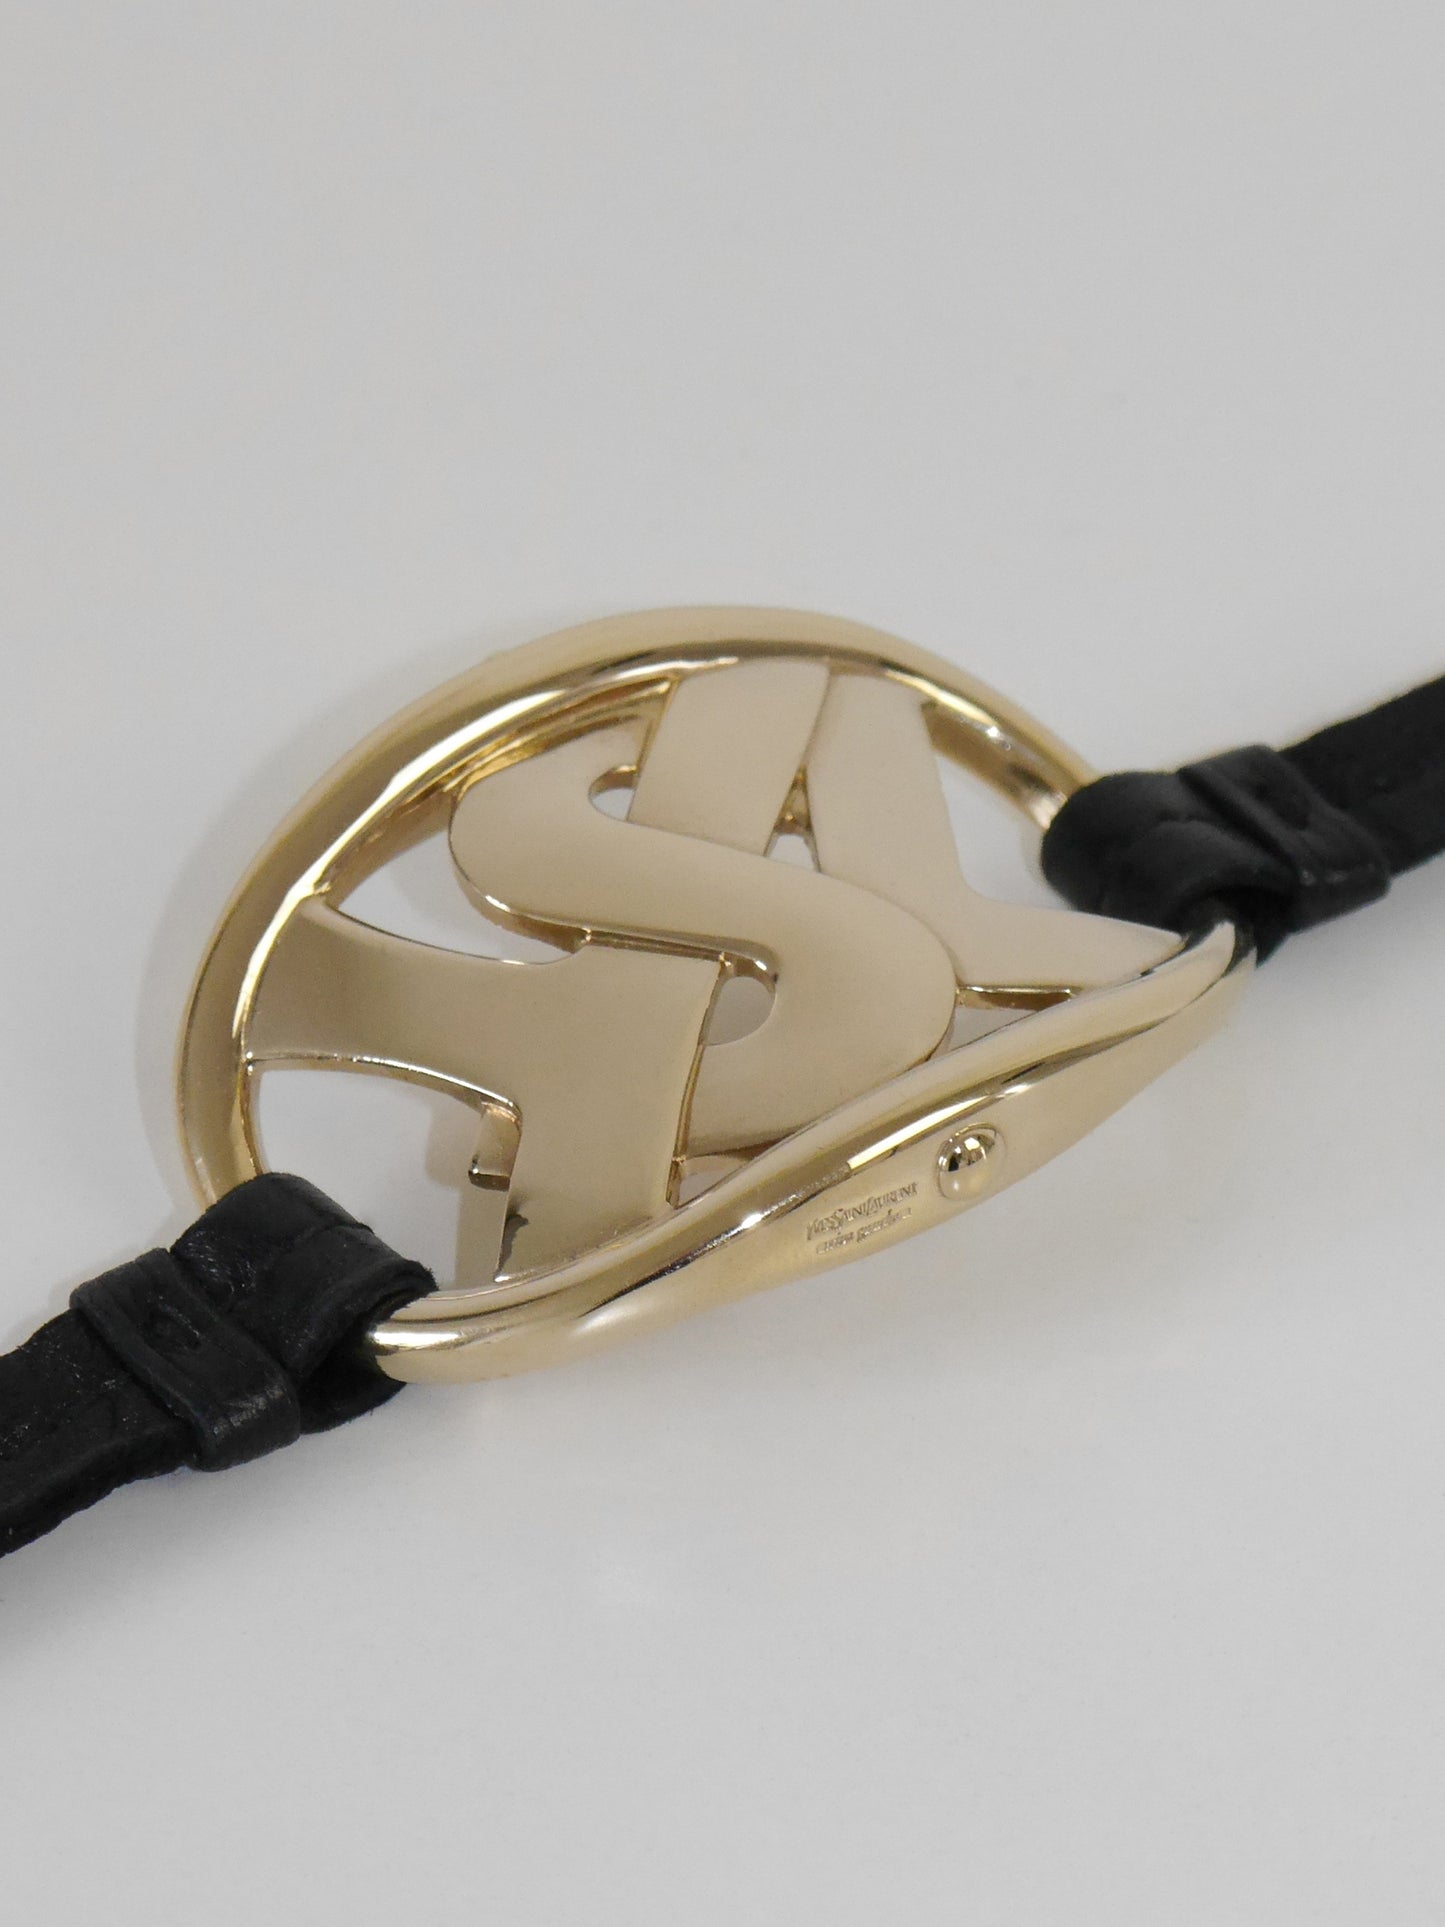 YVES SAINT LAURENT 2000s Vintage Leather & Metal Logo Bracelet, Choker Necklace Or Belt